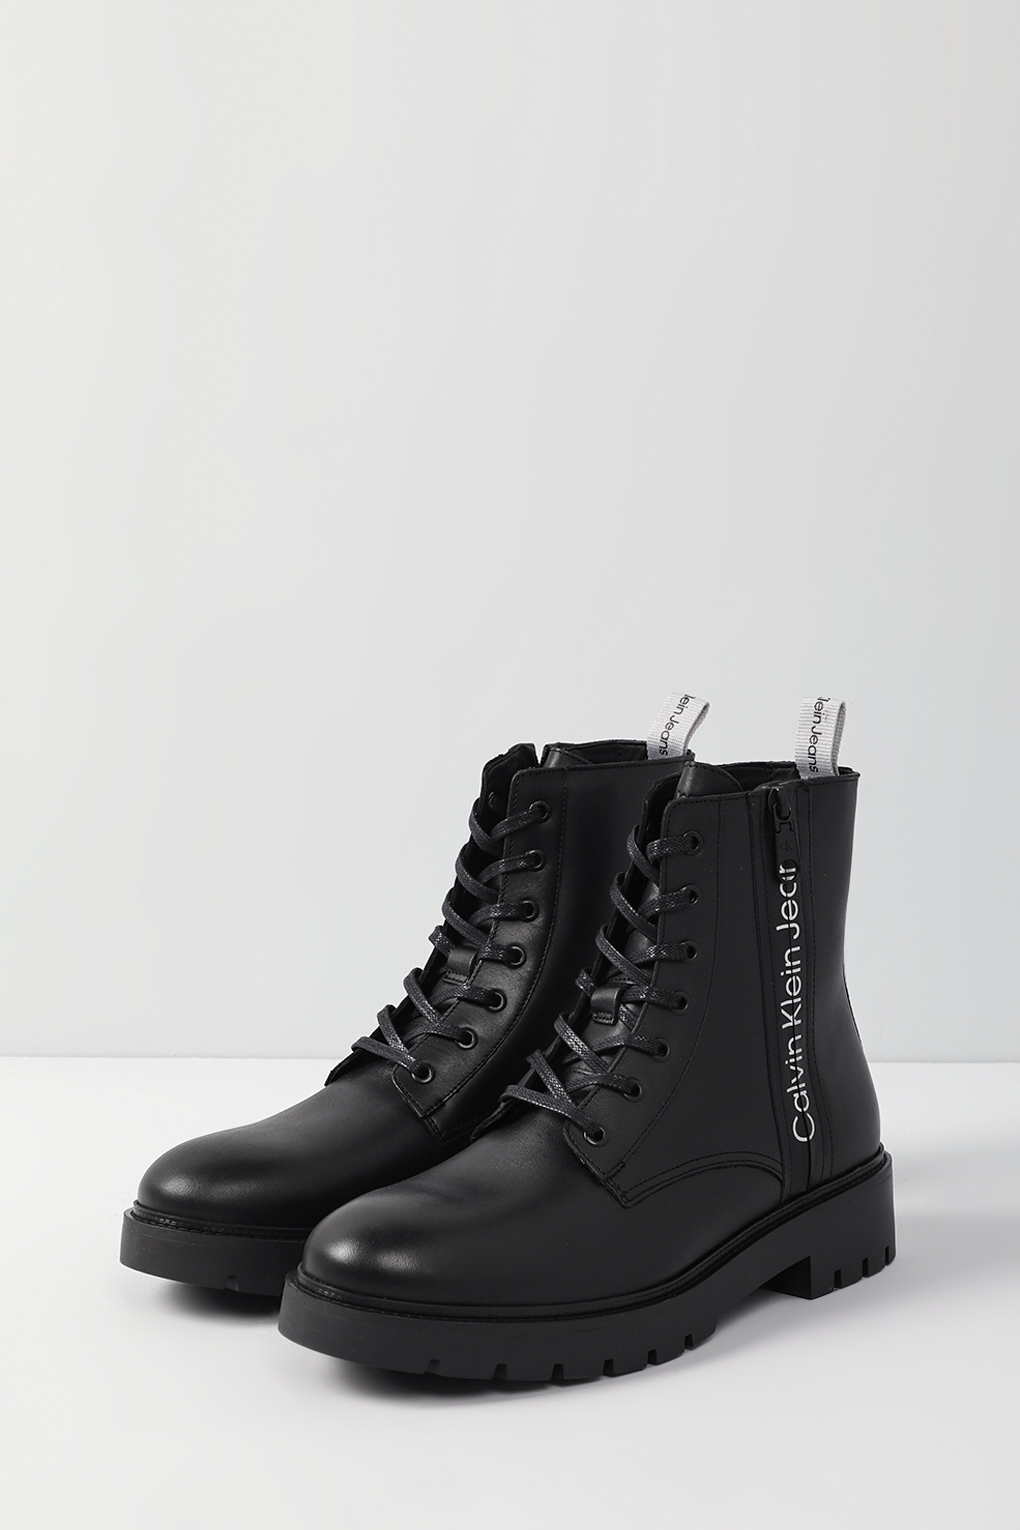 Ботинки мужские Calvin Klein YM0YM00262 черные 43 EU